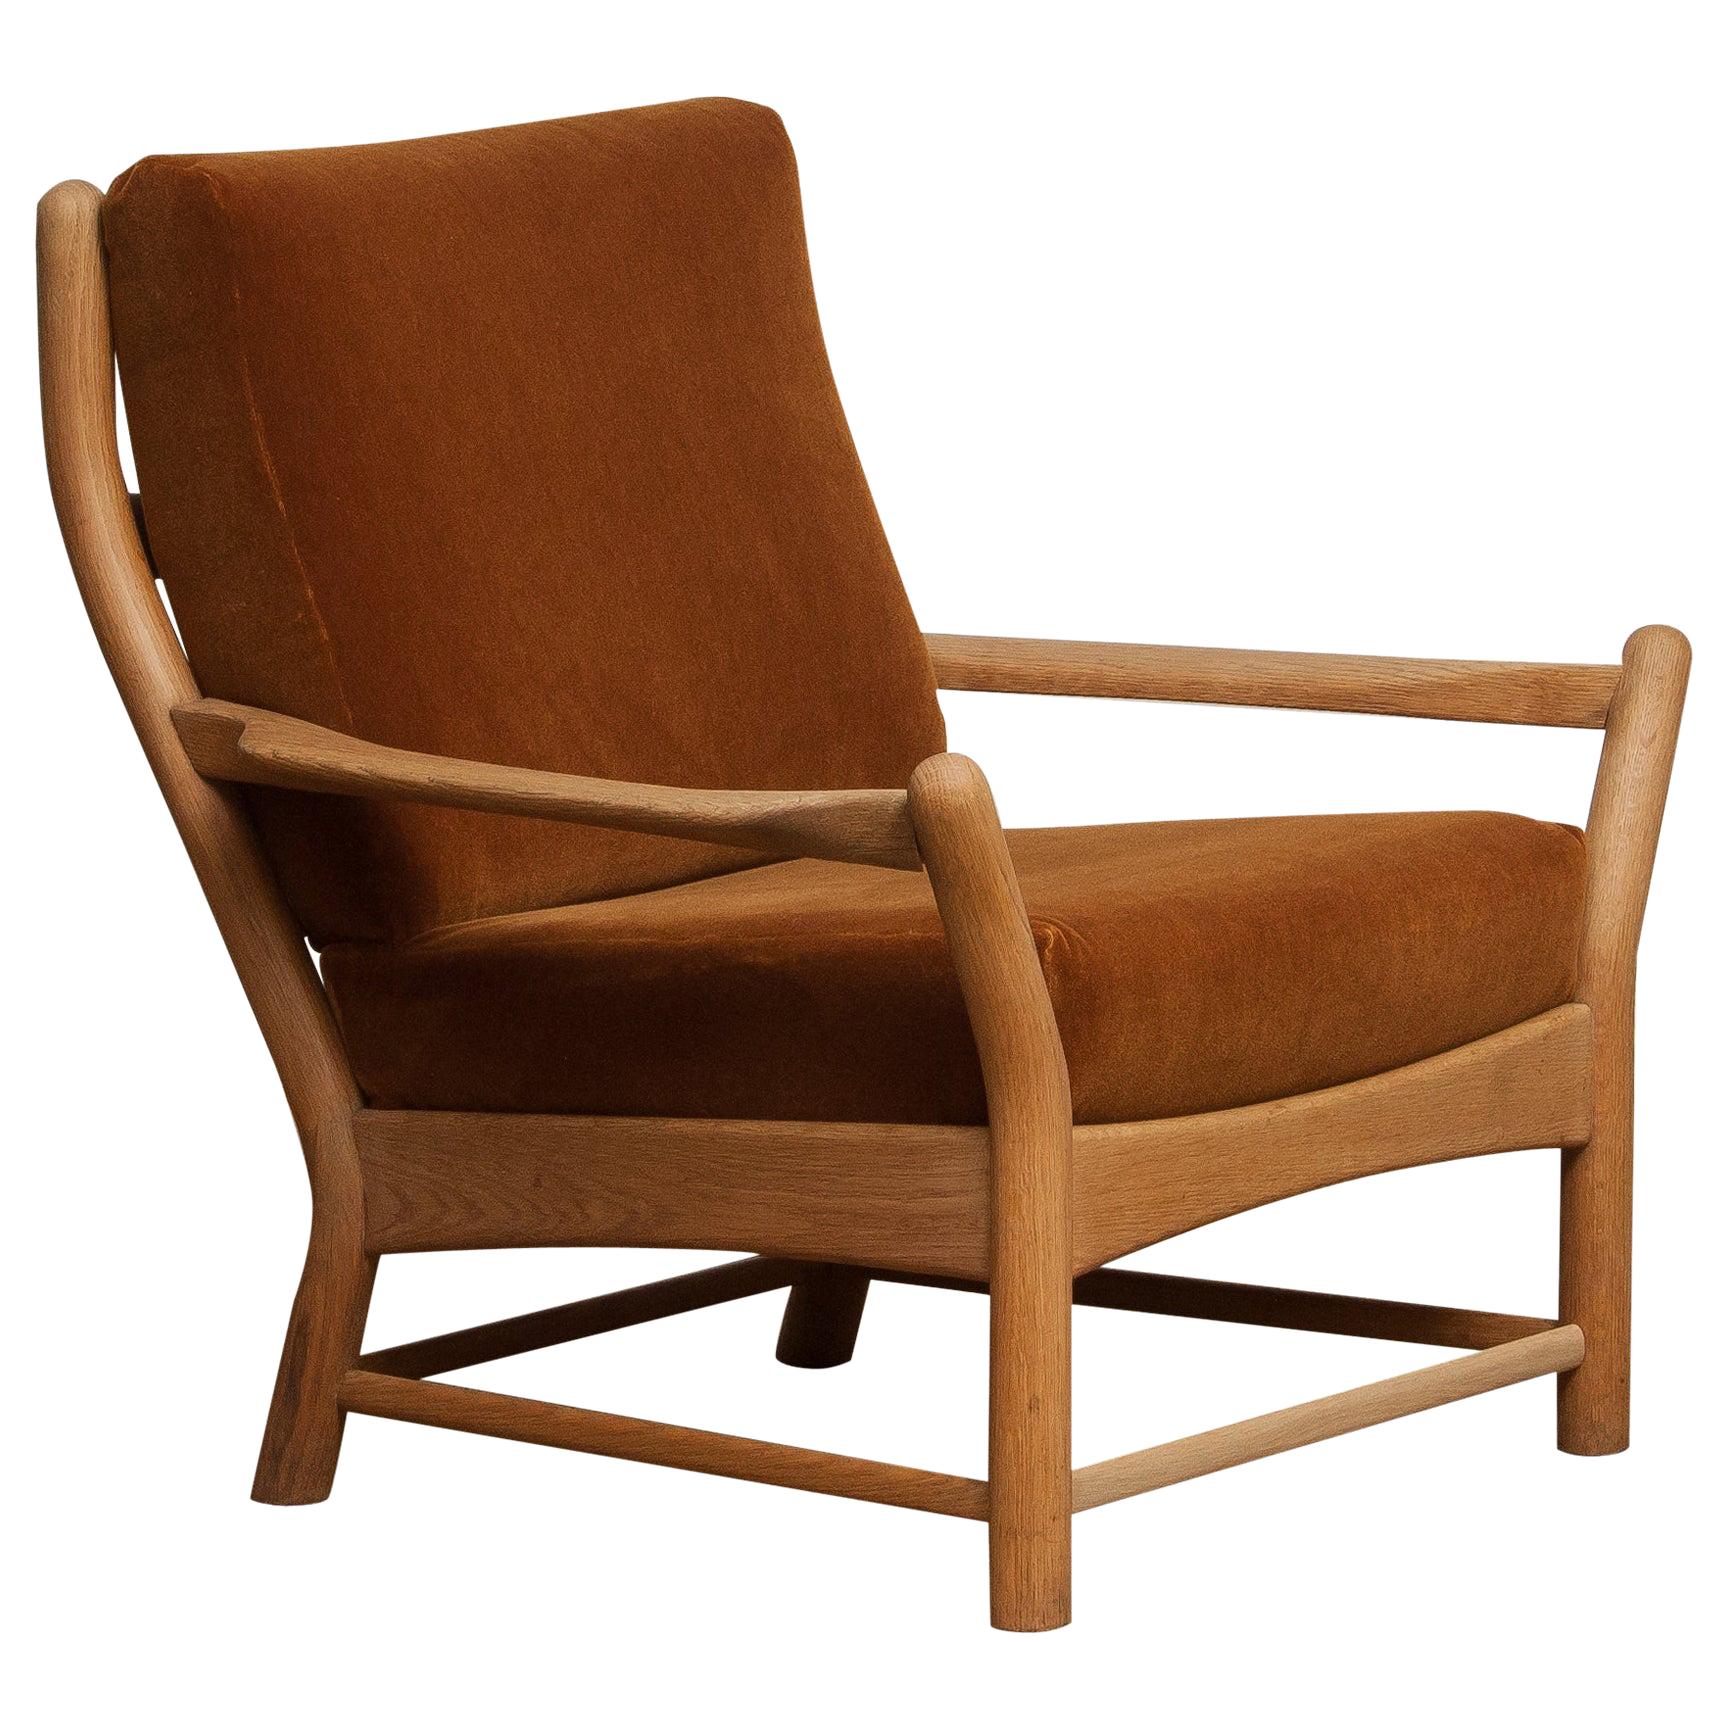 1950s, Oak and Brown Velvet Lounge Arm Easy Chair from Denmark